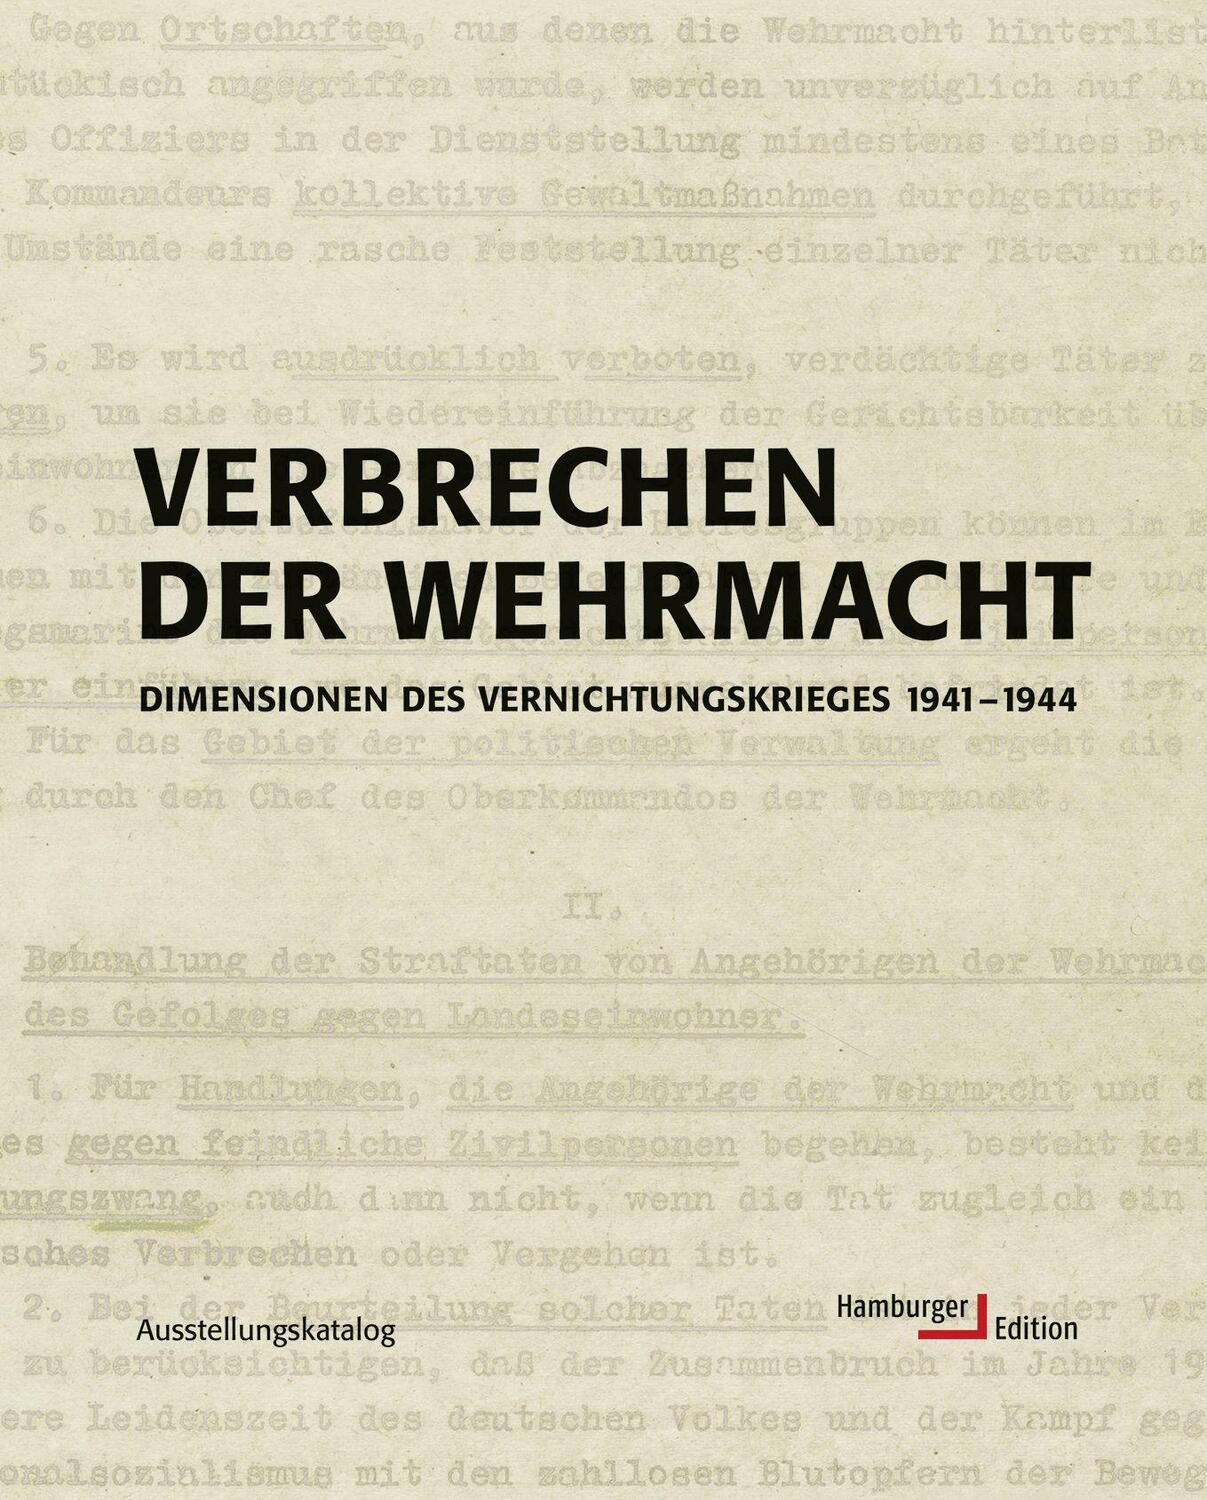 Verbrechen der Wehrmacht - Hamburger Institut für Sozialforschung